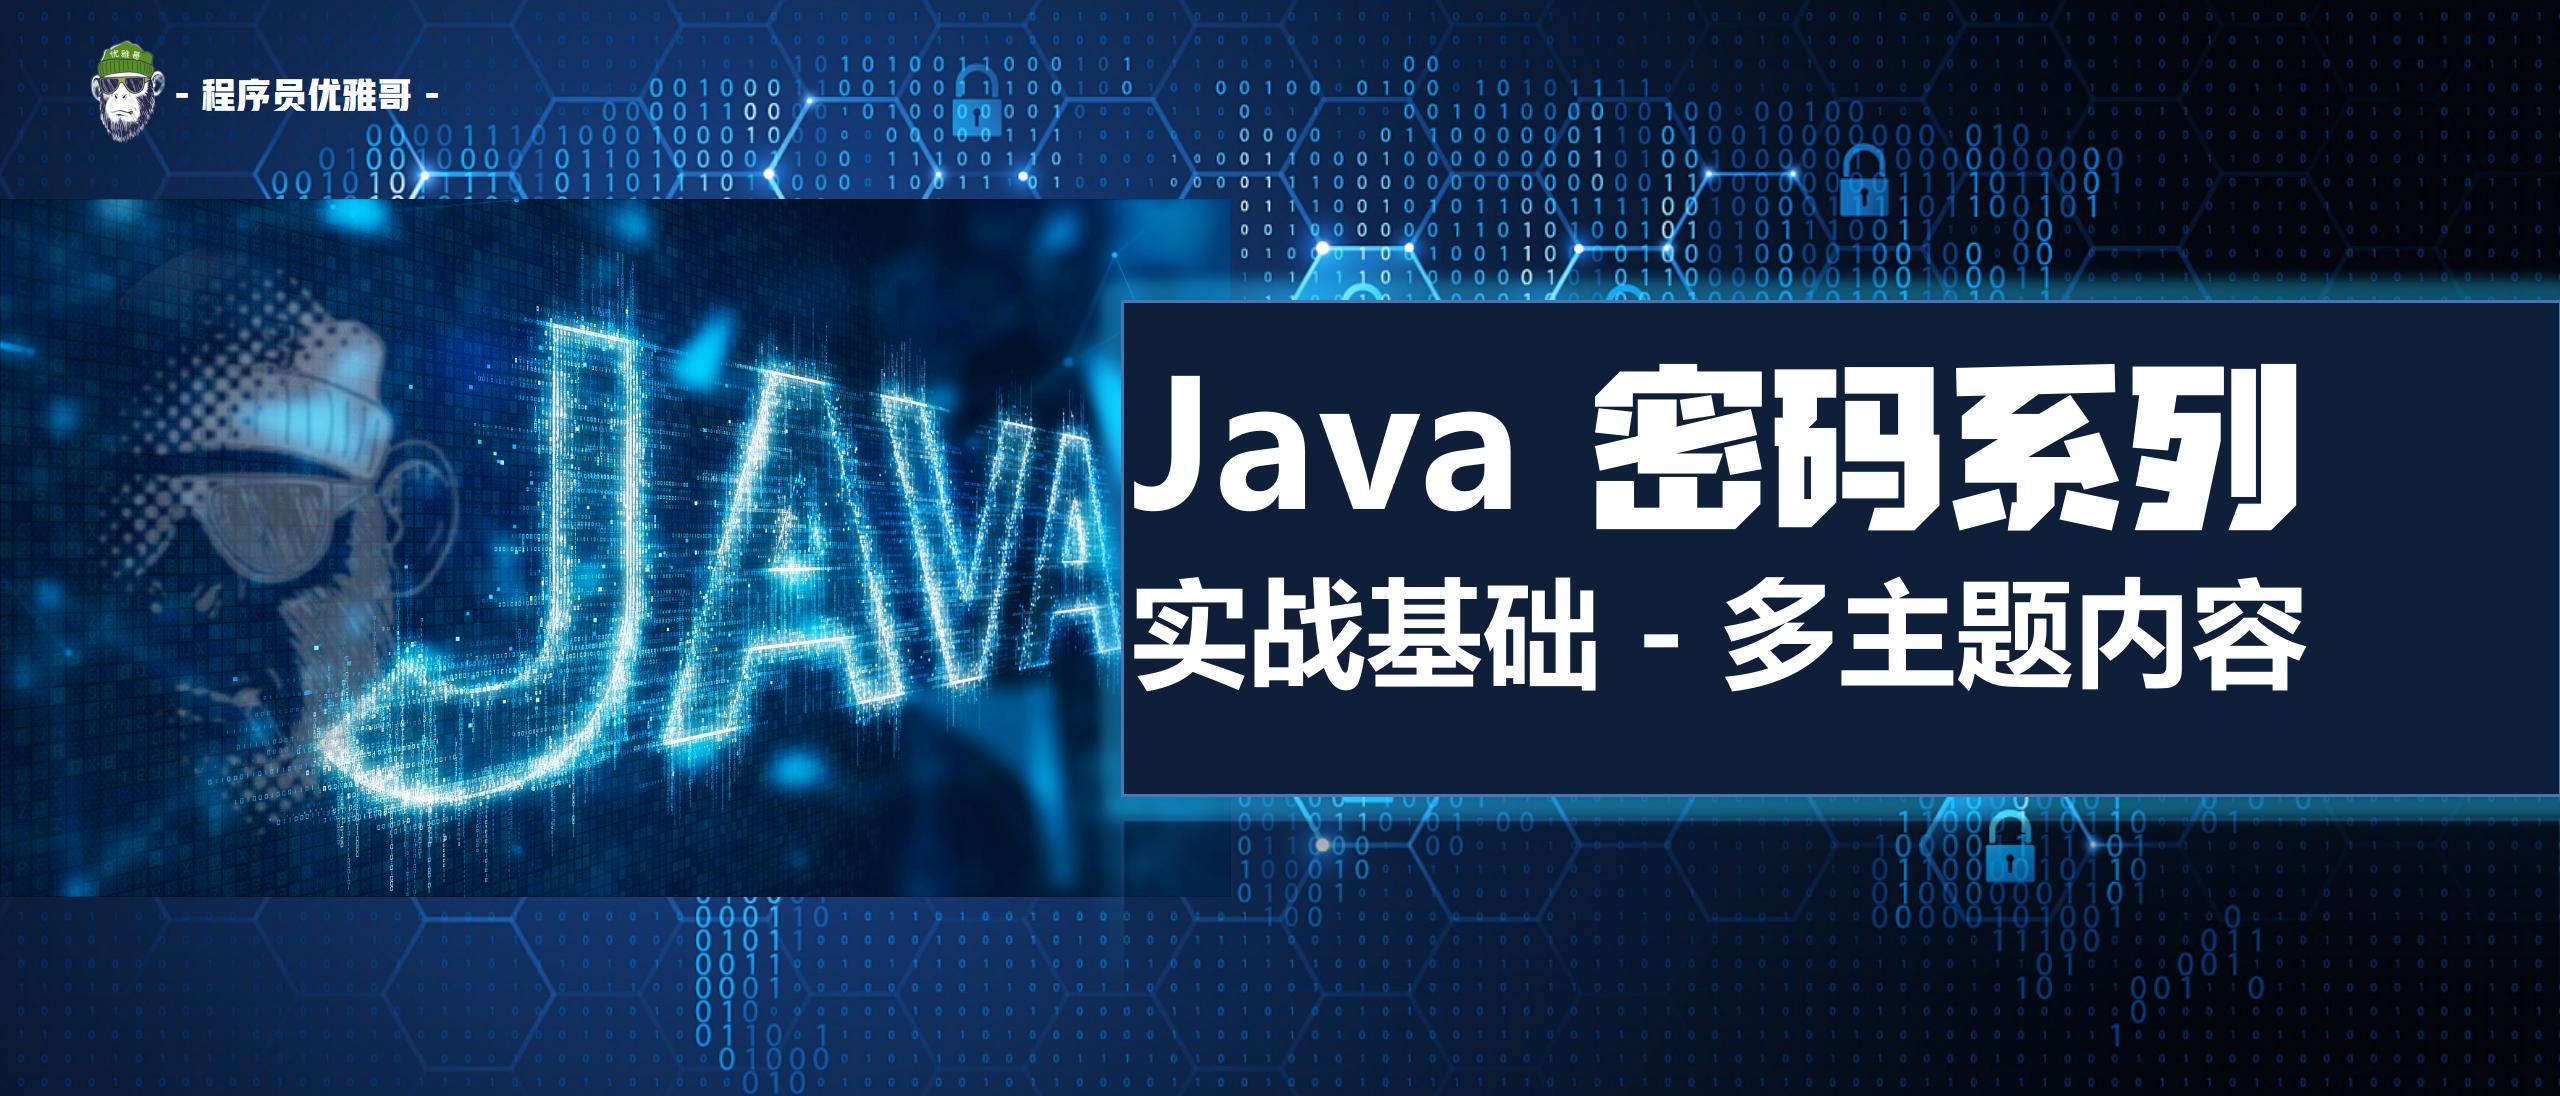 快速掌握 Base 64 |  Java JS 密码系列